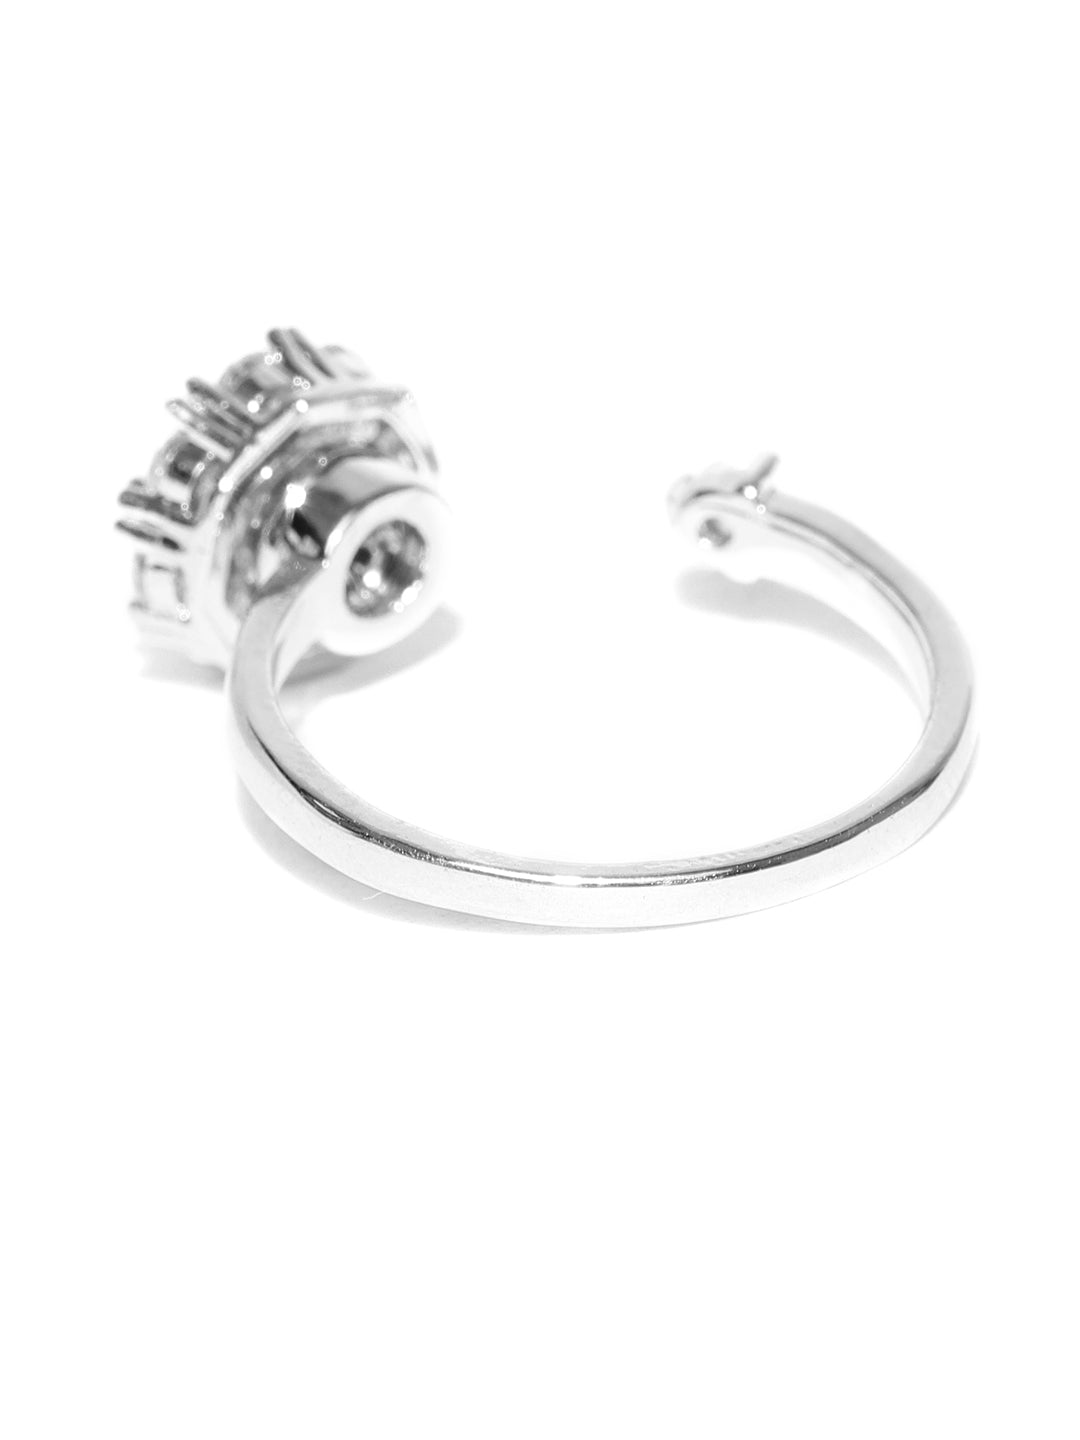 Soliter Adjustable Ring For Women & Girls